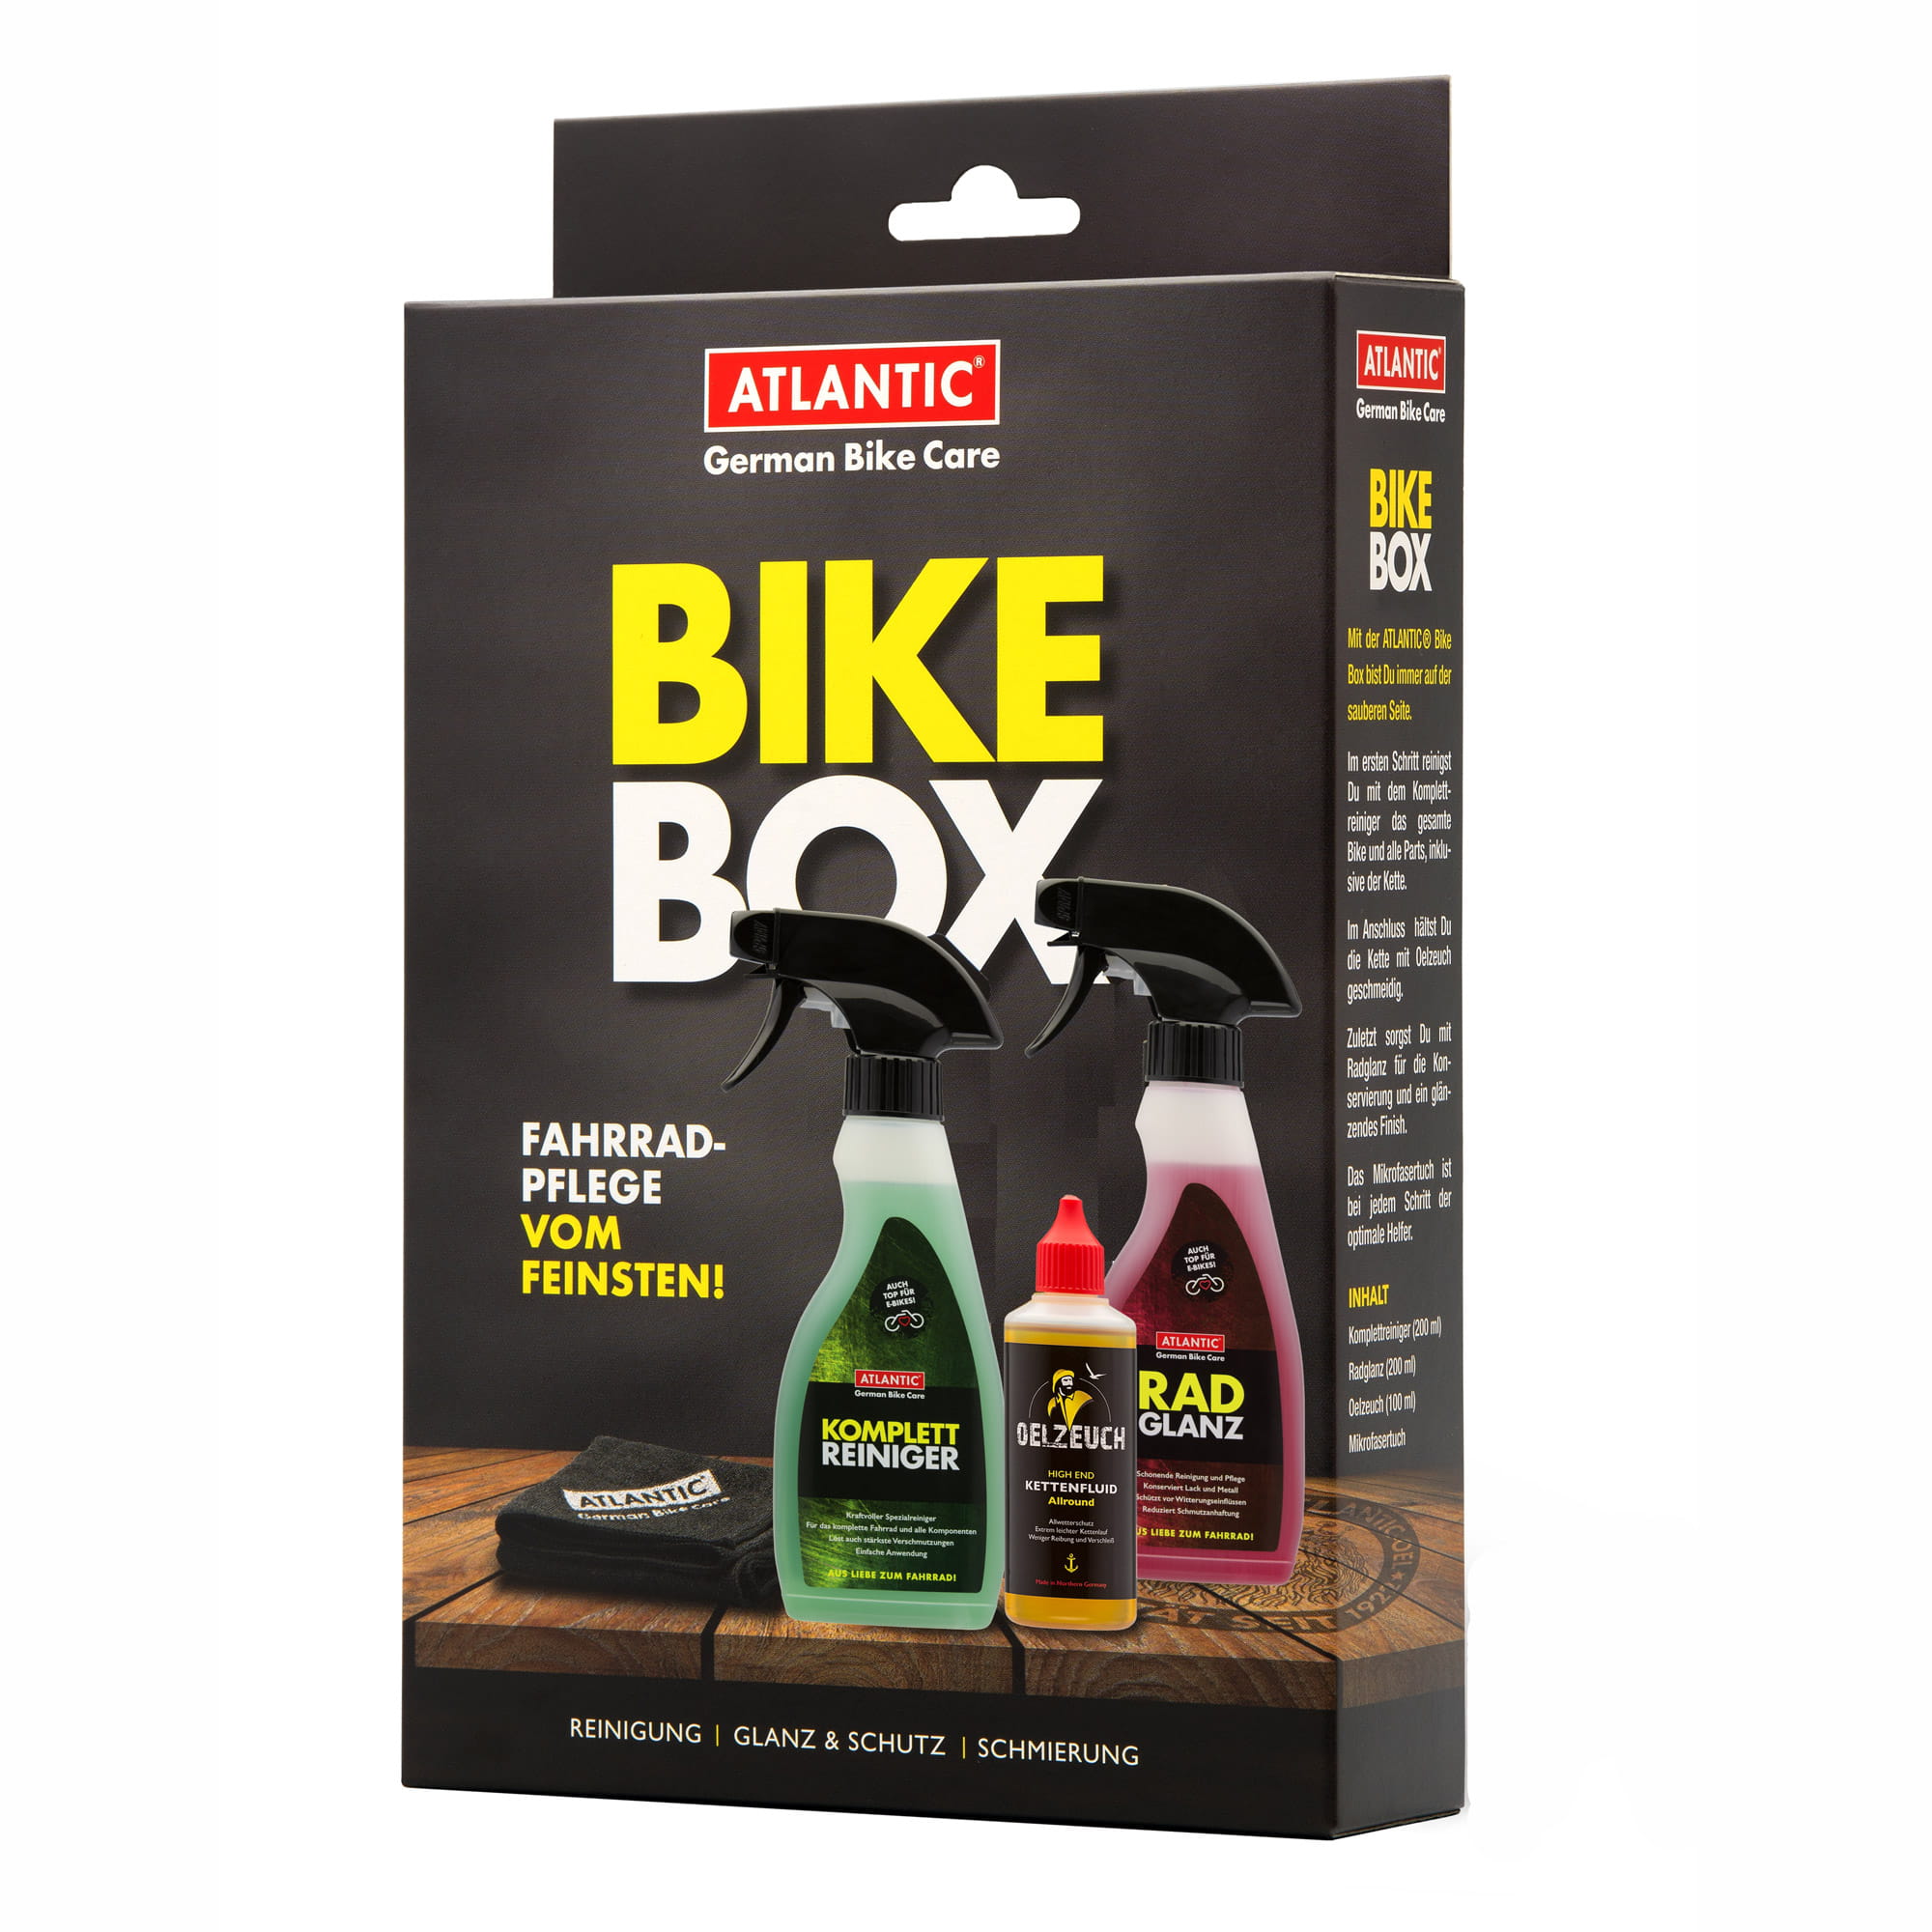 Atlantic Bike Box Set aus Radglanz, Komplettreiniger, Oelzeuch, Mikrofasertuch